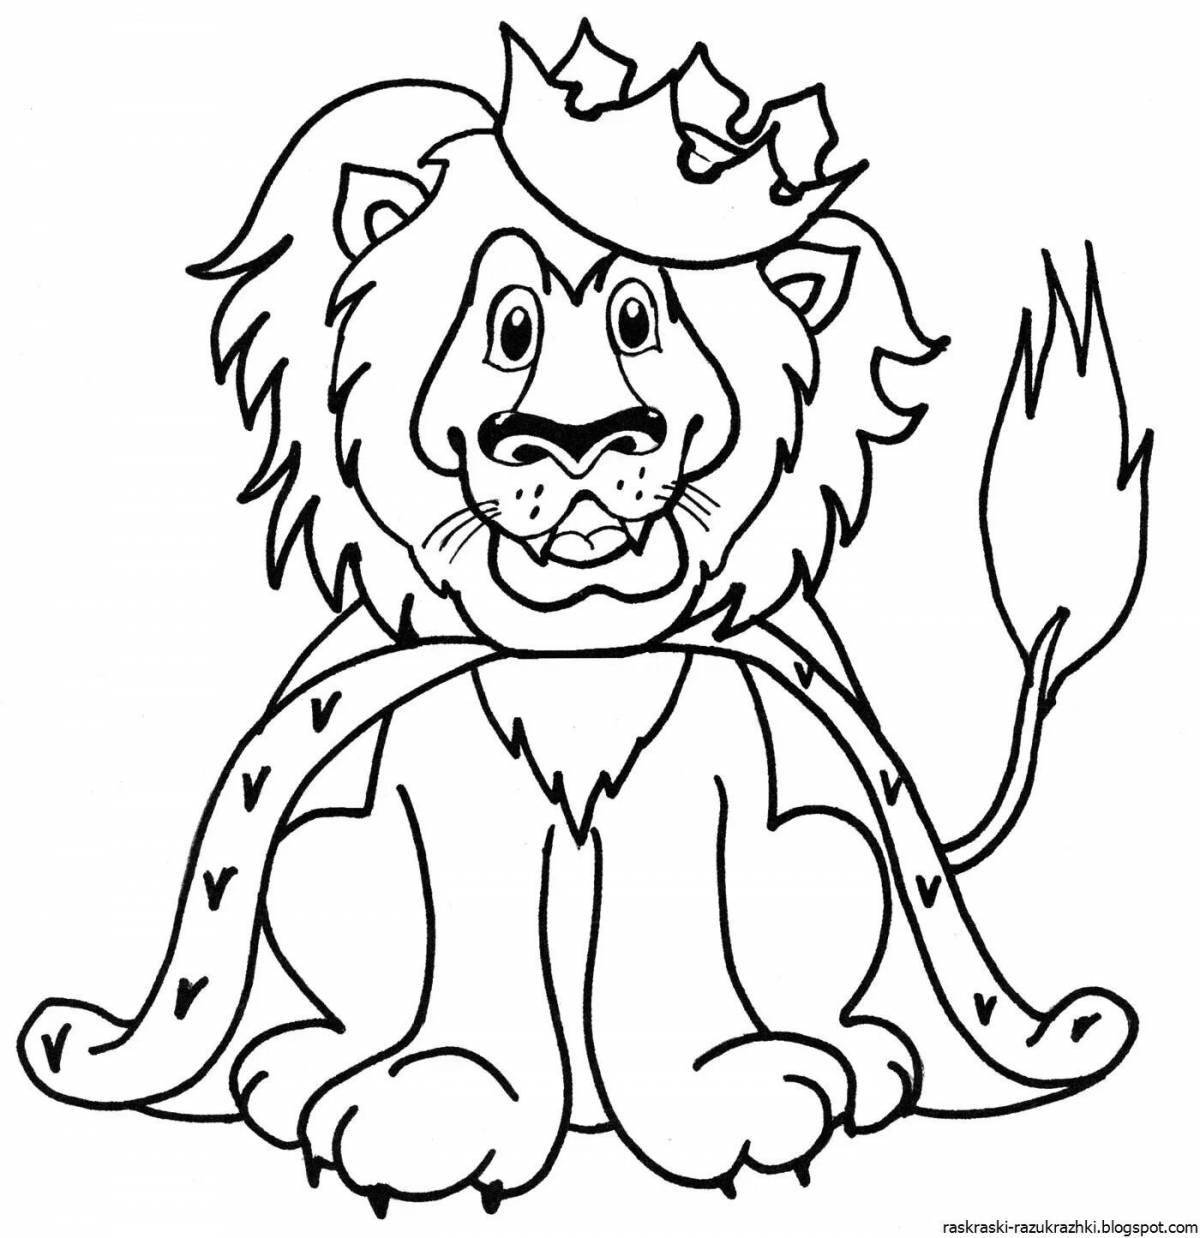 Сказочная раскраска льва для детей 3-4 лет